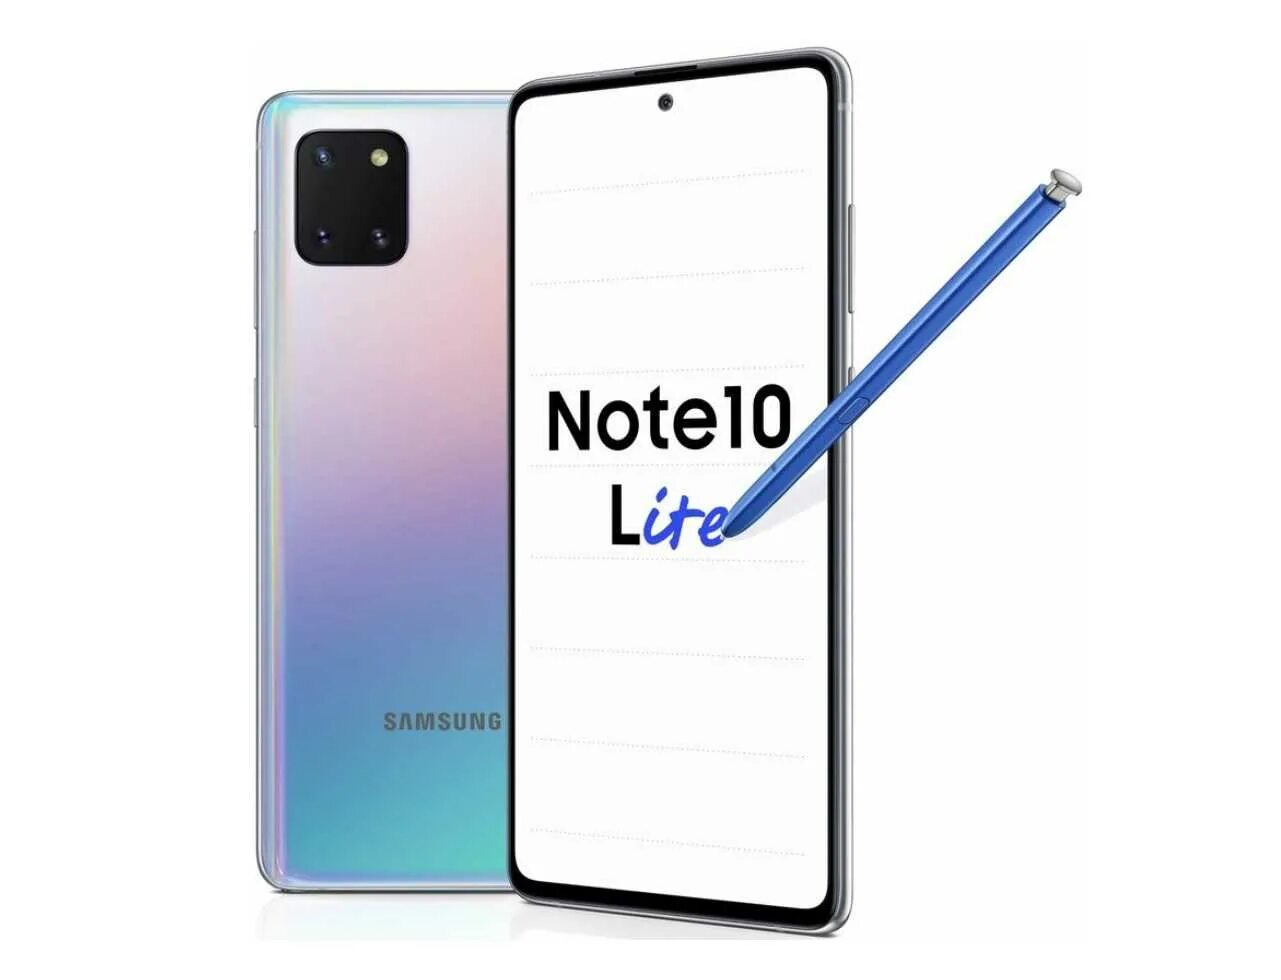 Самсунг галакси нот лайт. Samsung Galaxy Note 10 Lite. Самсунг галакси Note 10. Samsung Galaxy Note 10 Lite 6/128g. Samsung Note 10 128gb.